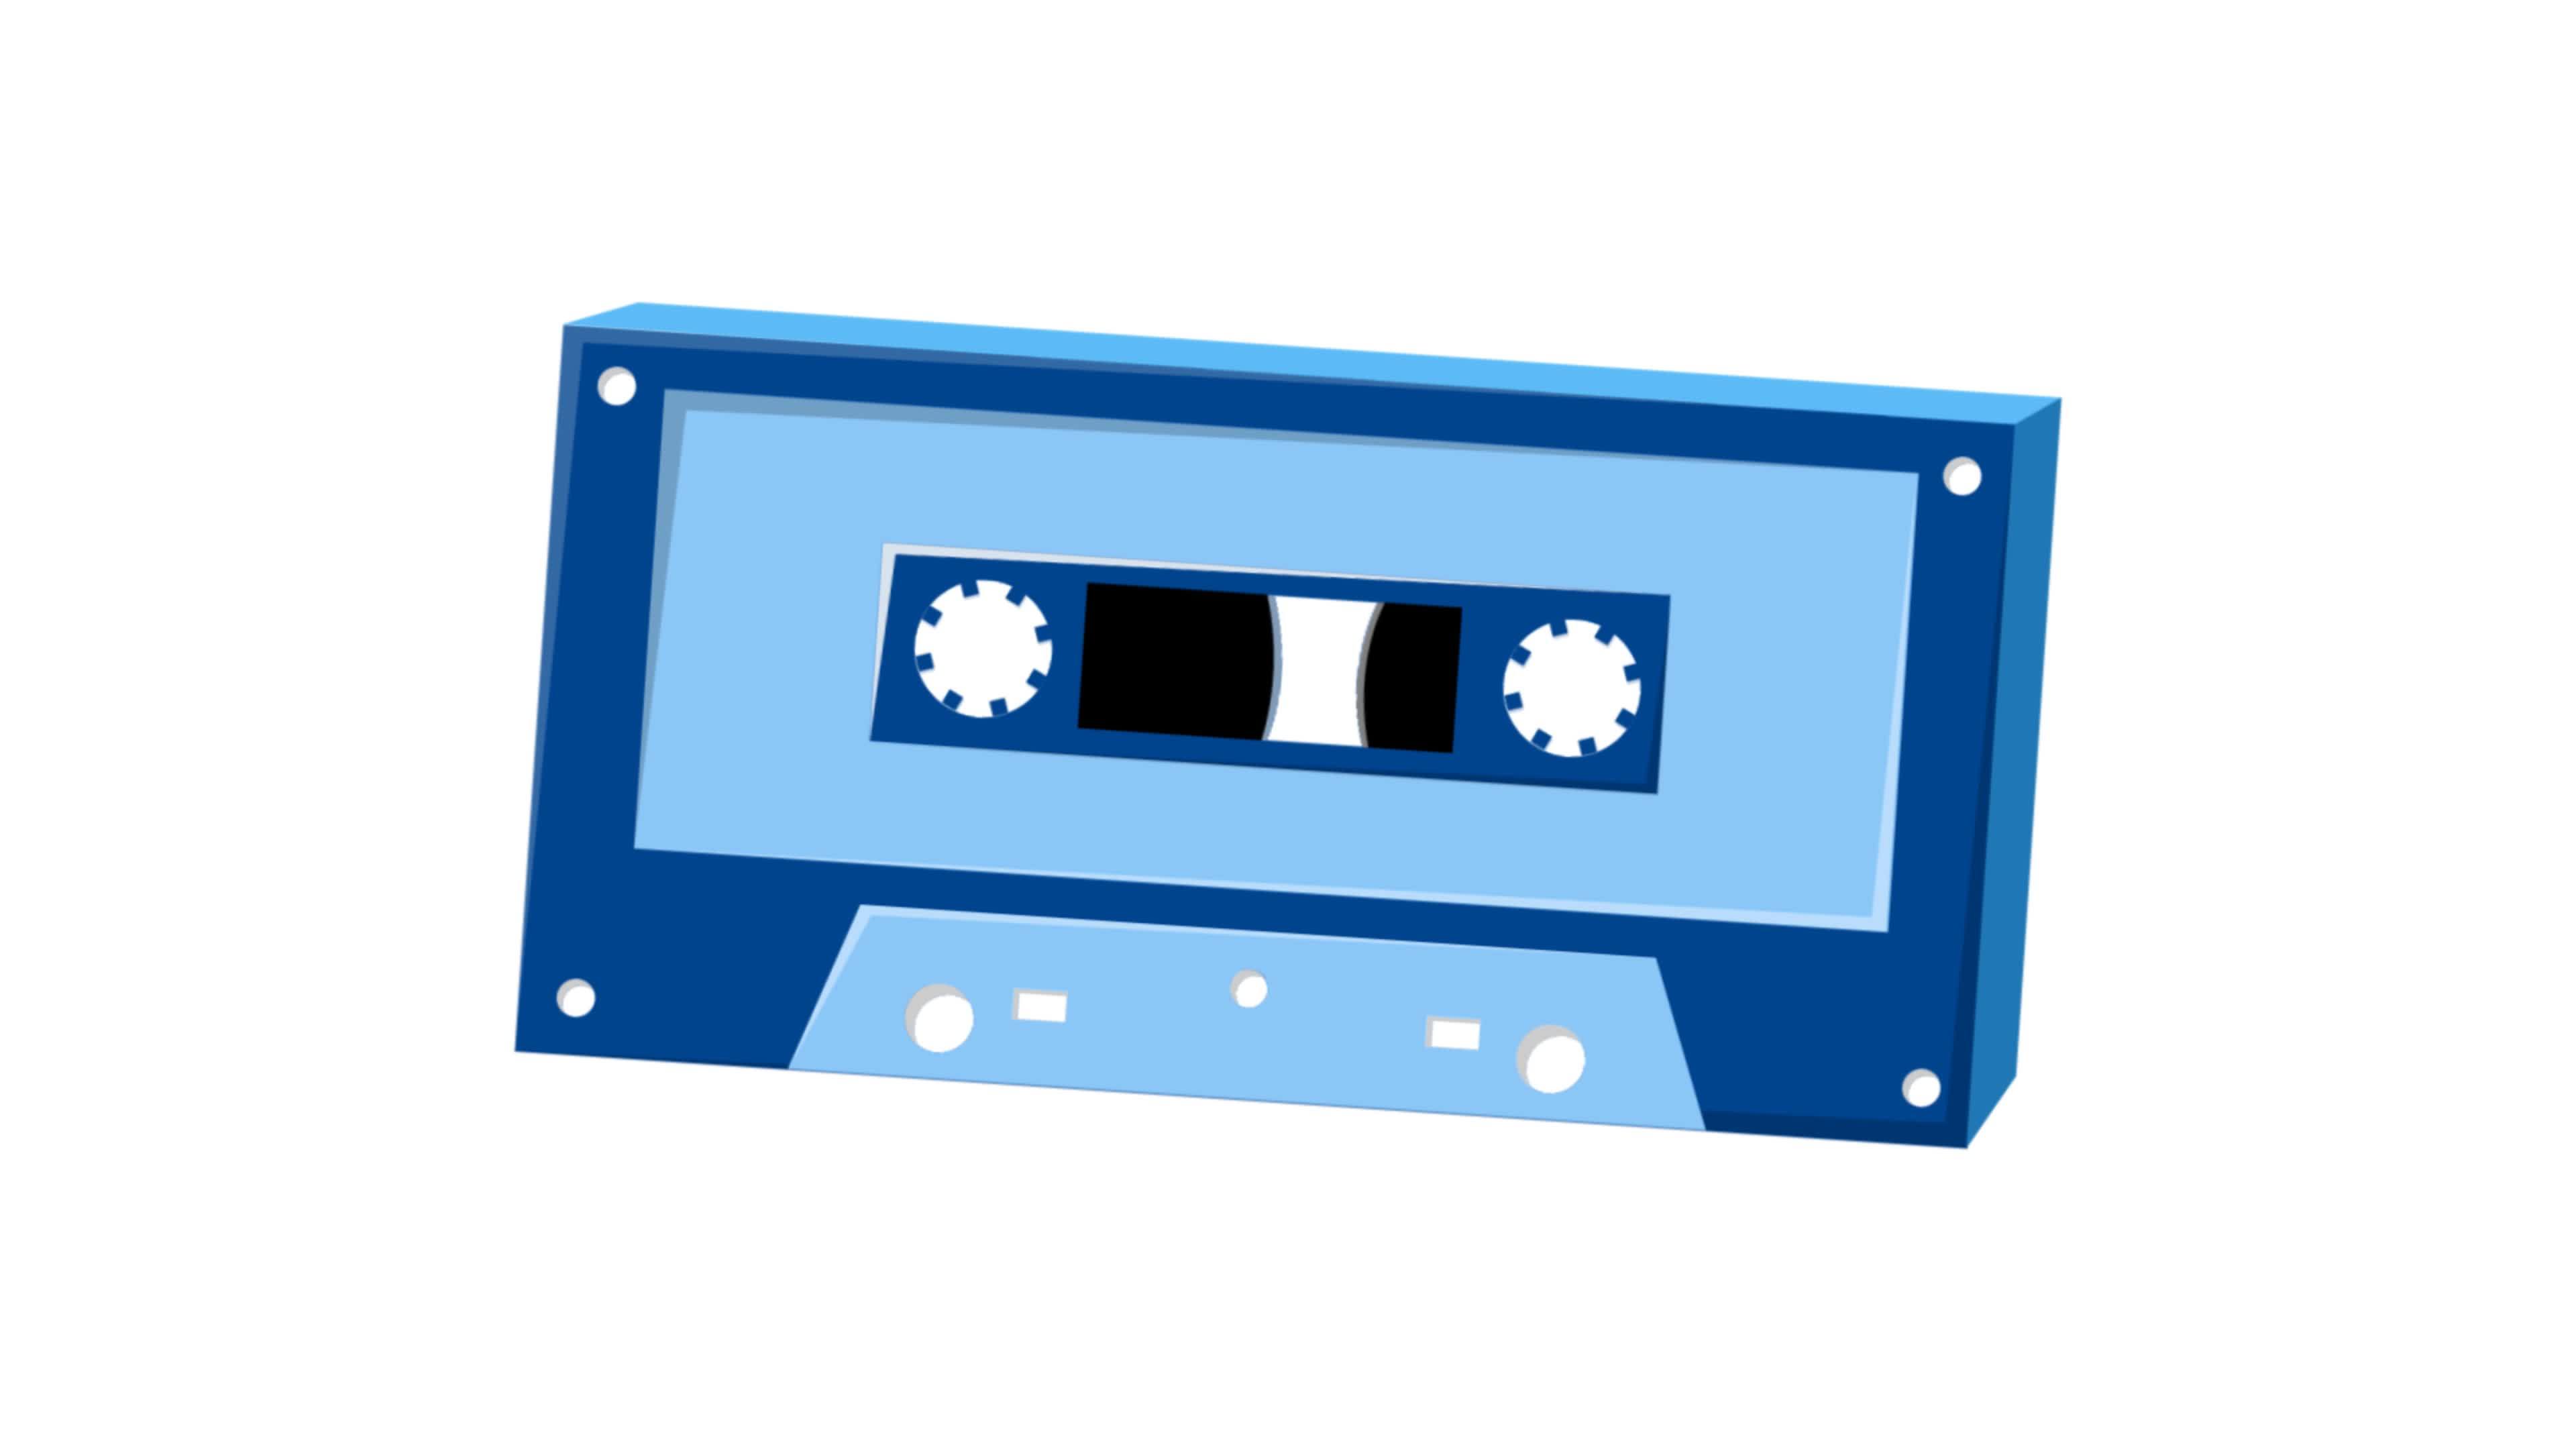 Bạn có thích âm thanh ấm áp và cảm giác cổ điển của máy thu băng Cassette Tape Recorder không? Hãy xem hình ảnh liên quan và nhấc máy lên để trải nghiệm những bài hát yêu thích như thời kỳ nghe nhạc của mình.